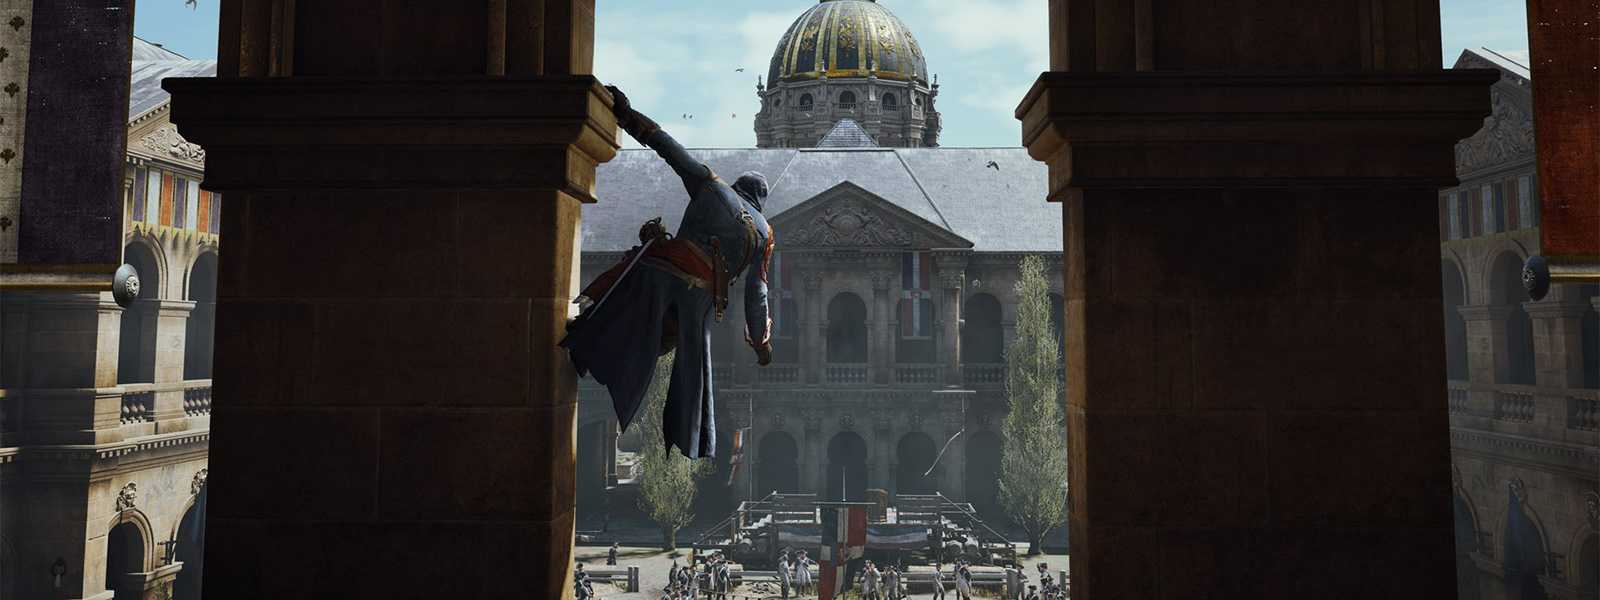 Assassins Creed: Unity Кредо ассассина: Единство на 100 Главы 1, 2, 3, 4 GamesisArtru